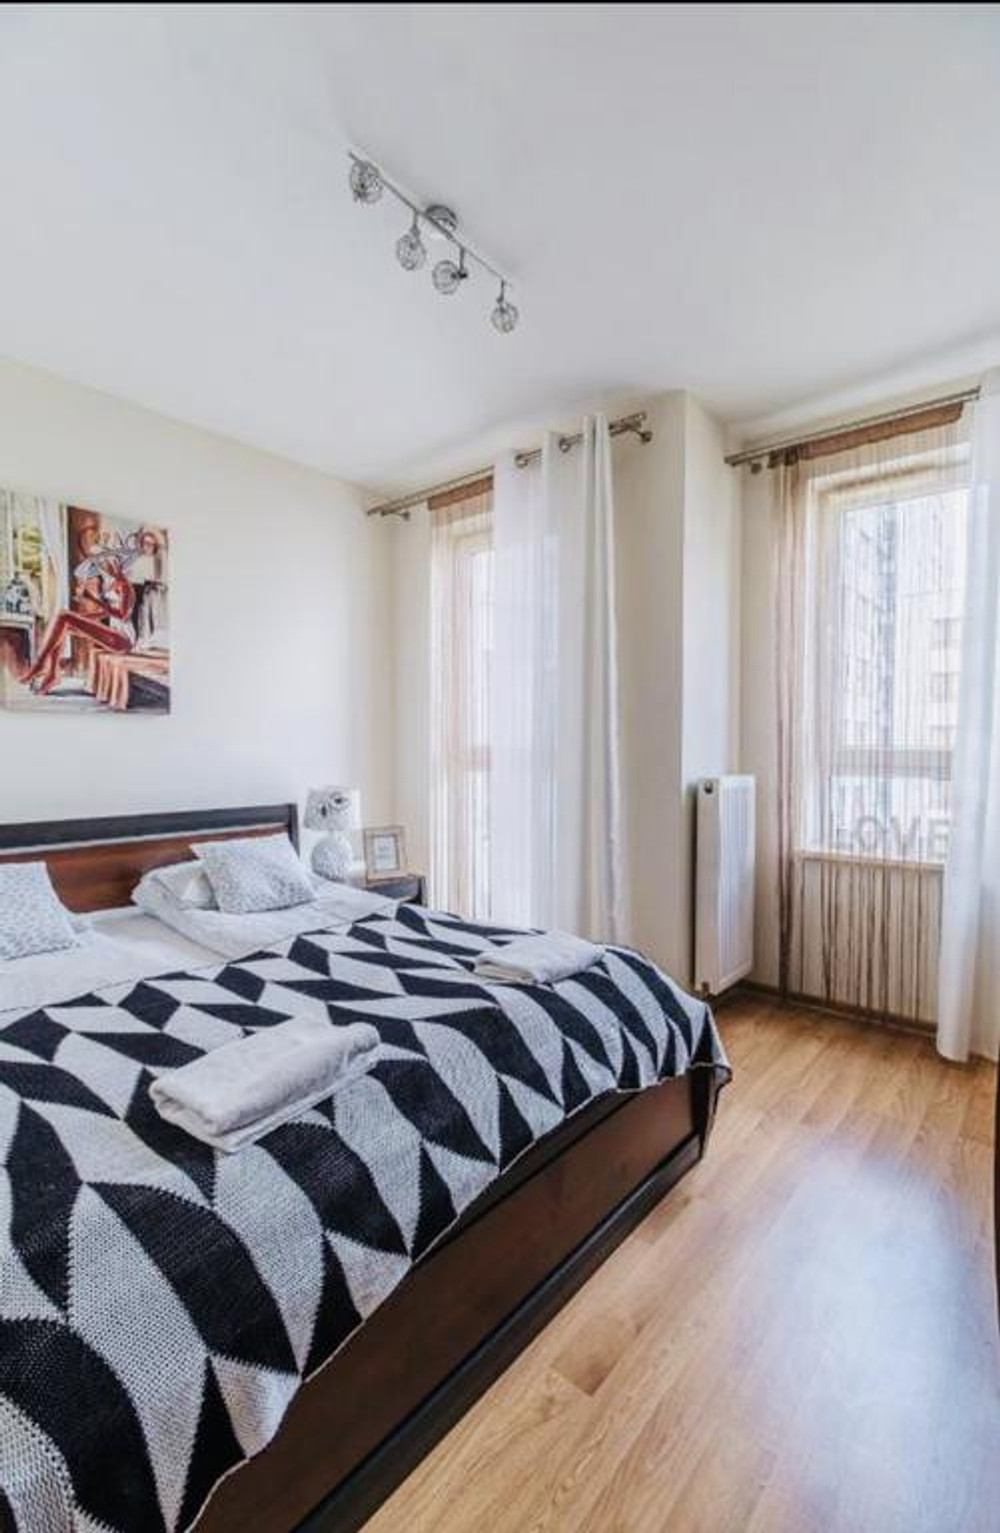 A cozy 2-bedroom flat